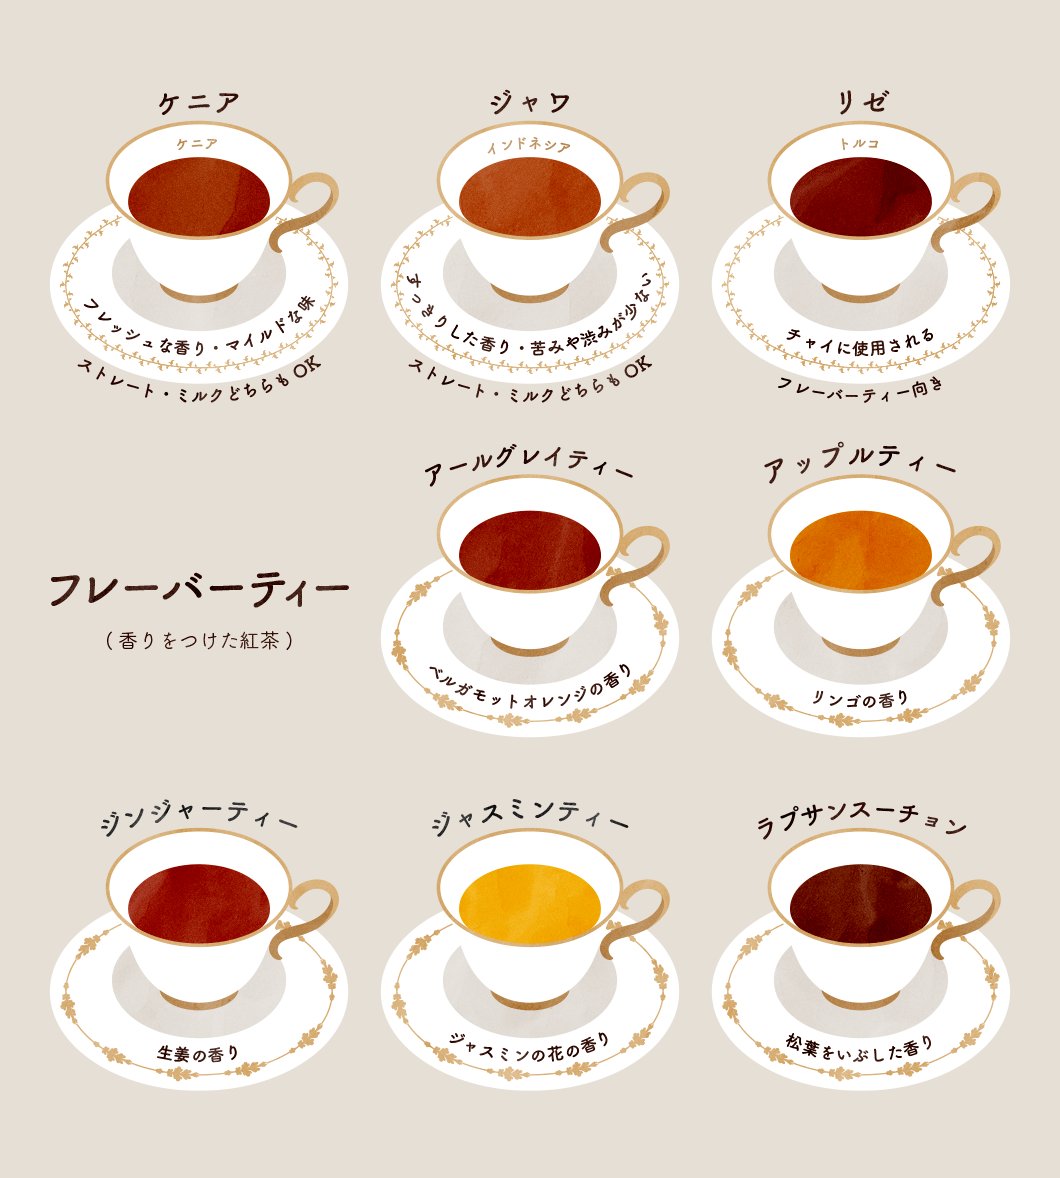 紅茶の種類一覧 オススメの飲み方も載っています 話題の画像プラス